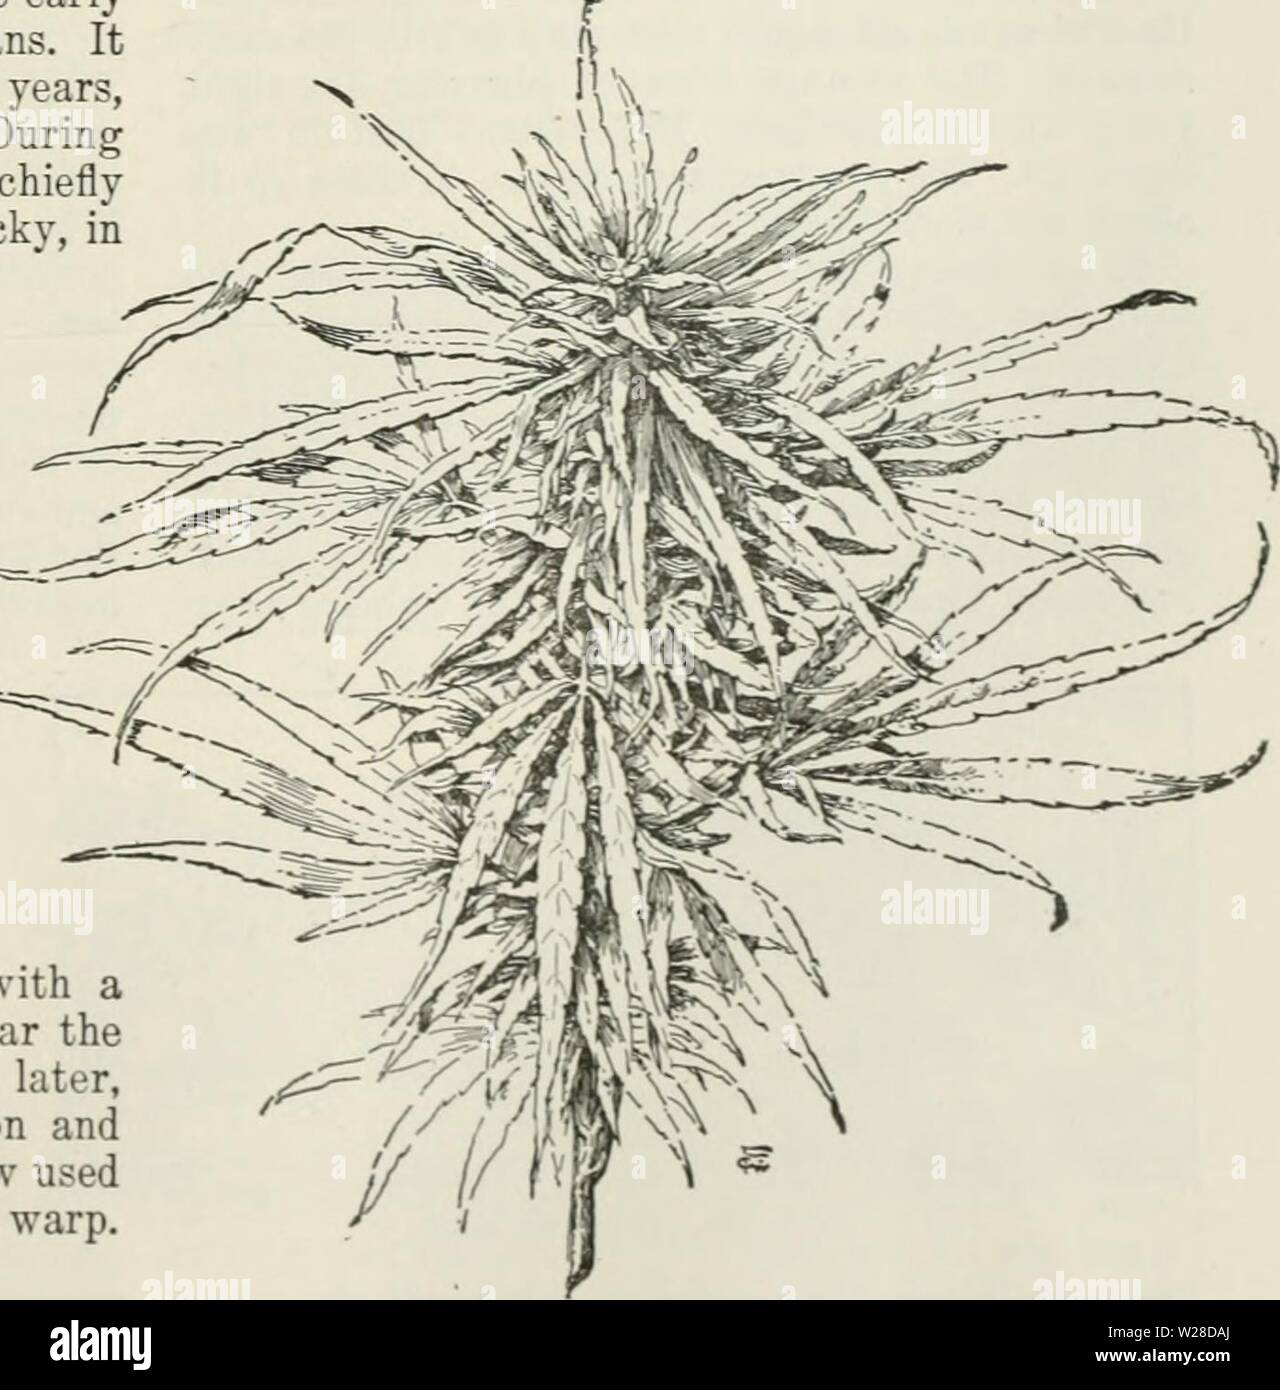 Archiv Bild ab Seite 424 der Cyclopedia von landwirtschaftlichen Kulturpflanzen Stockfoto